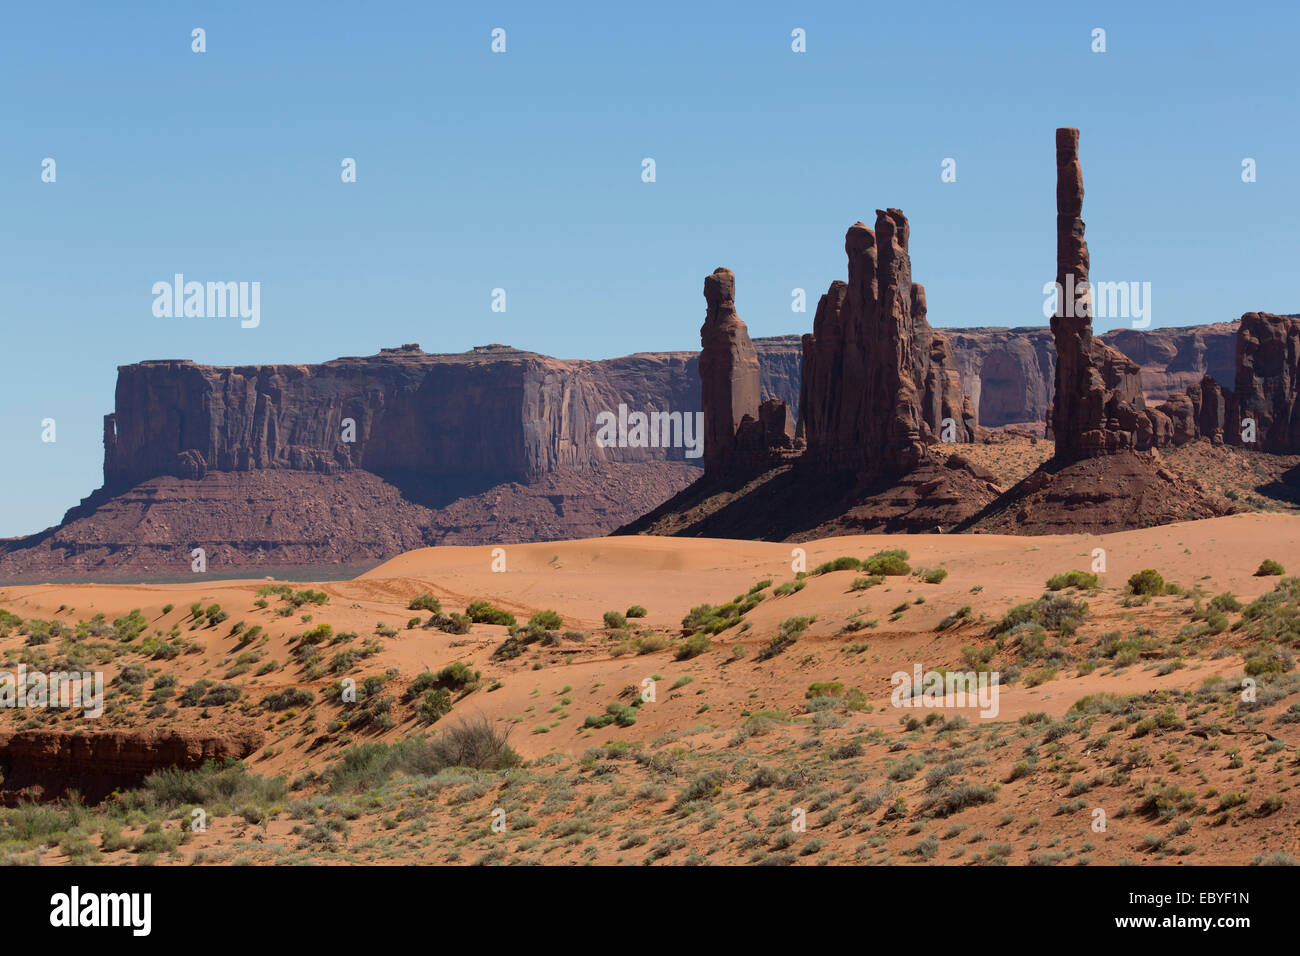 Stati Uniti d'America, Utah, il parco tribale Navajo Monument Valley, Totem Pole (a destra), la TEI Bi Chei (centro) Foto Stock